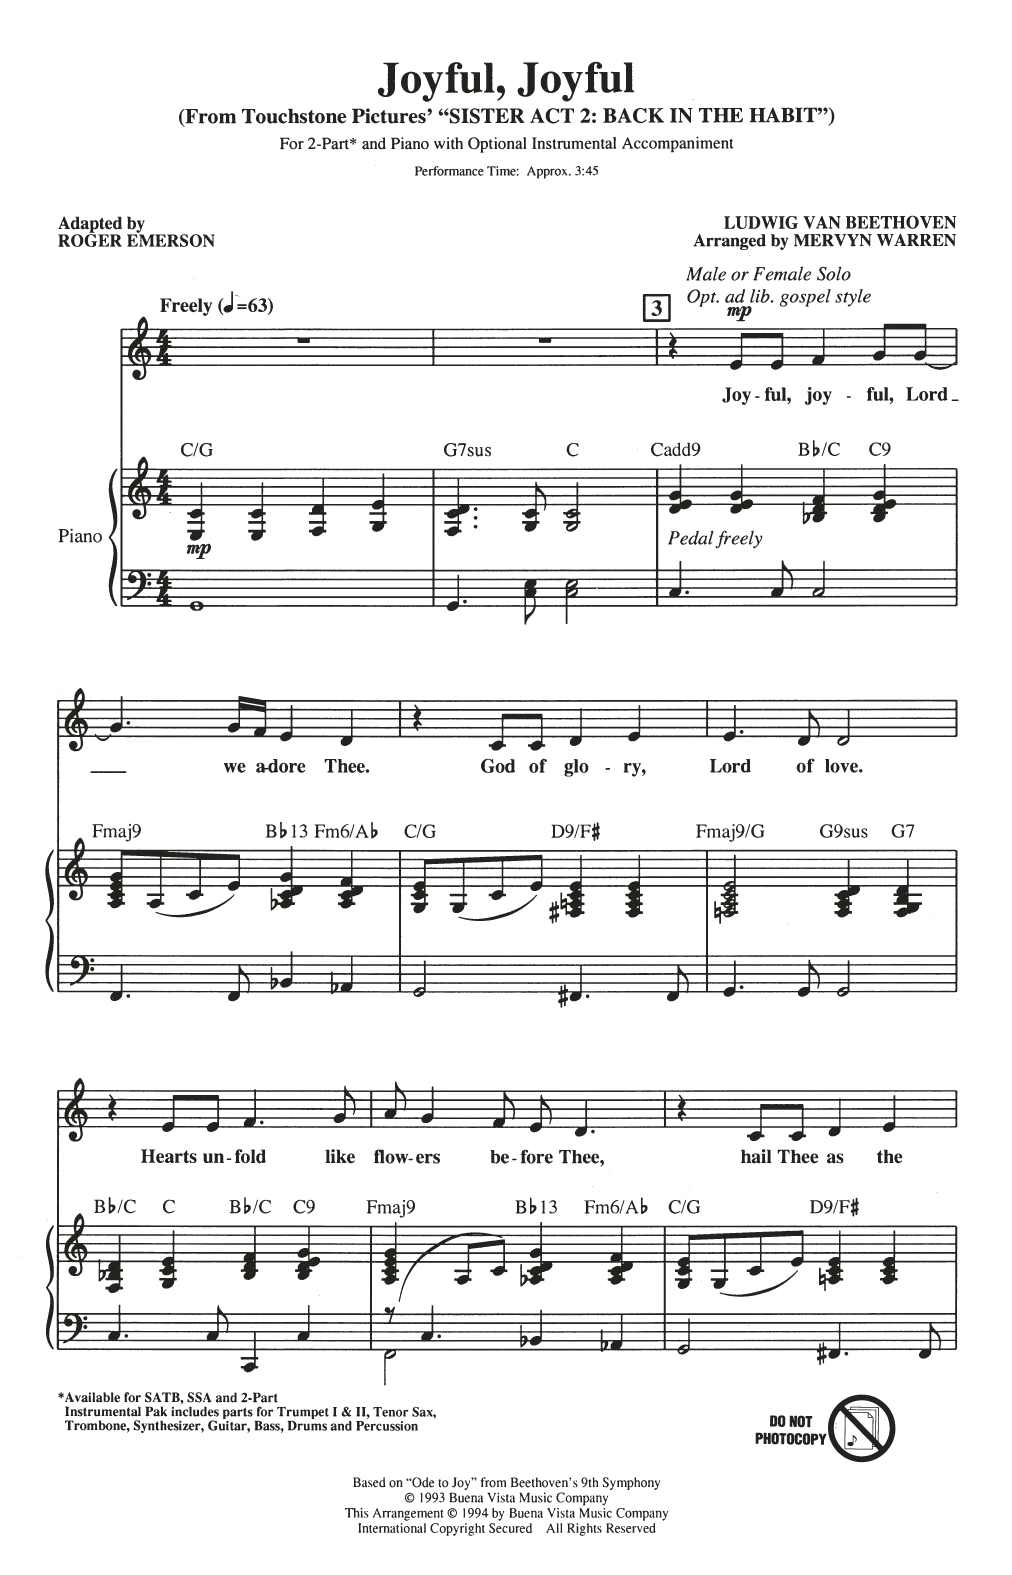 Mervyn Warren Joyful, Joyful (from Sister Act 2) (arr. Roger Emerson) sheet music notes and chords arranged for 3-Part Mixed Choir